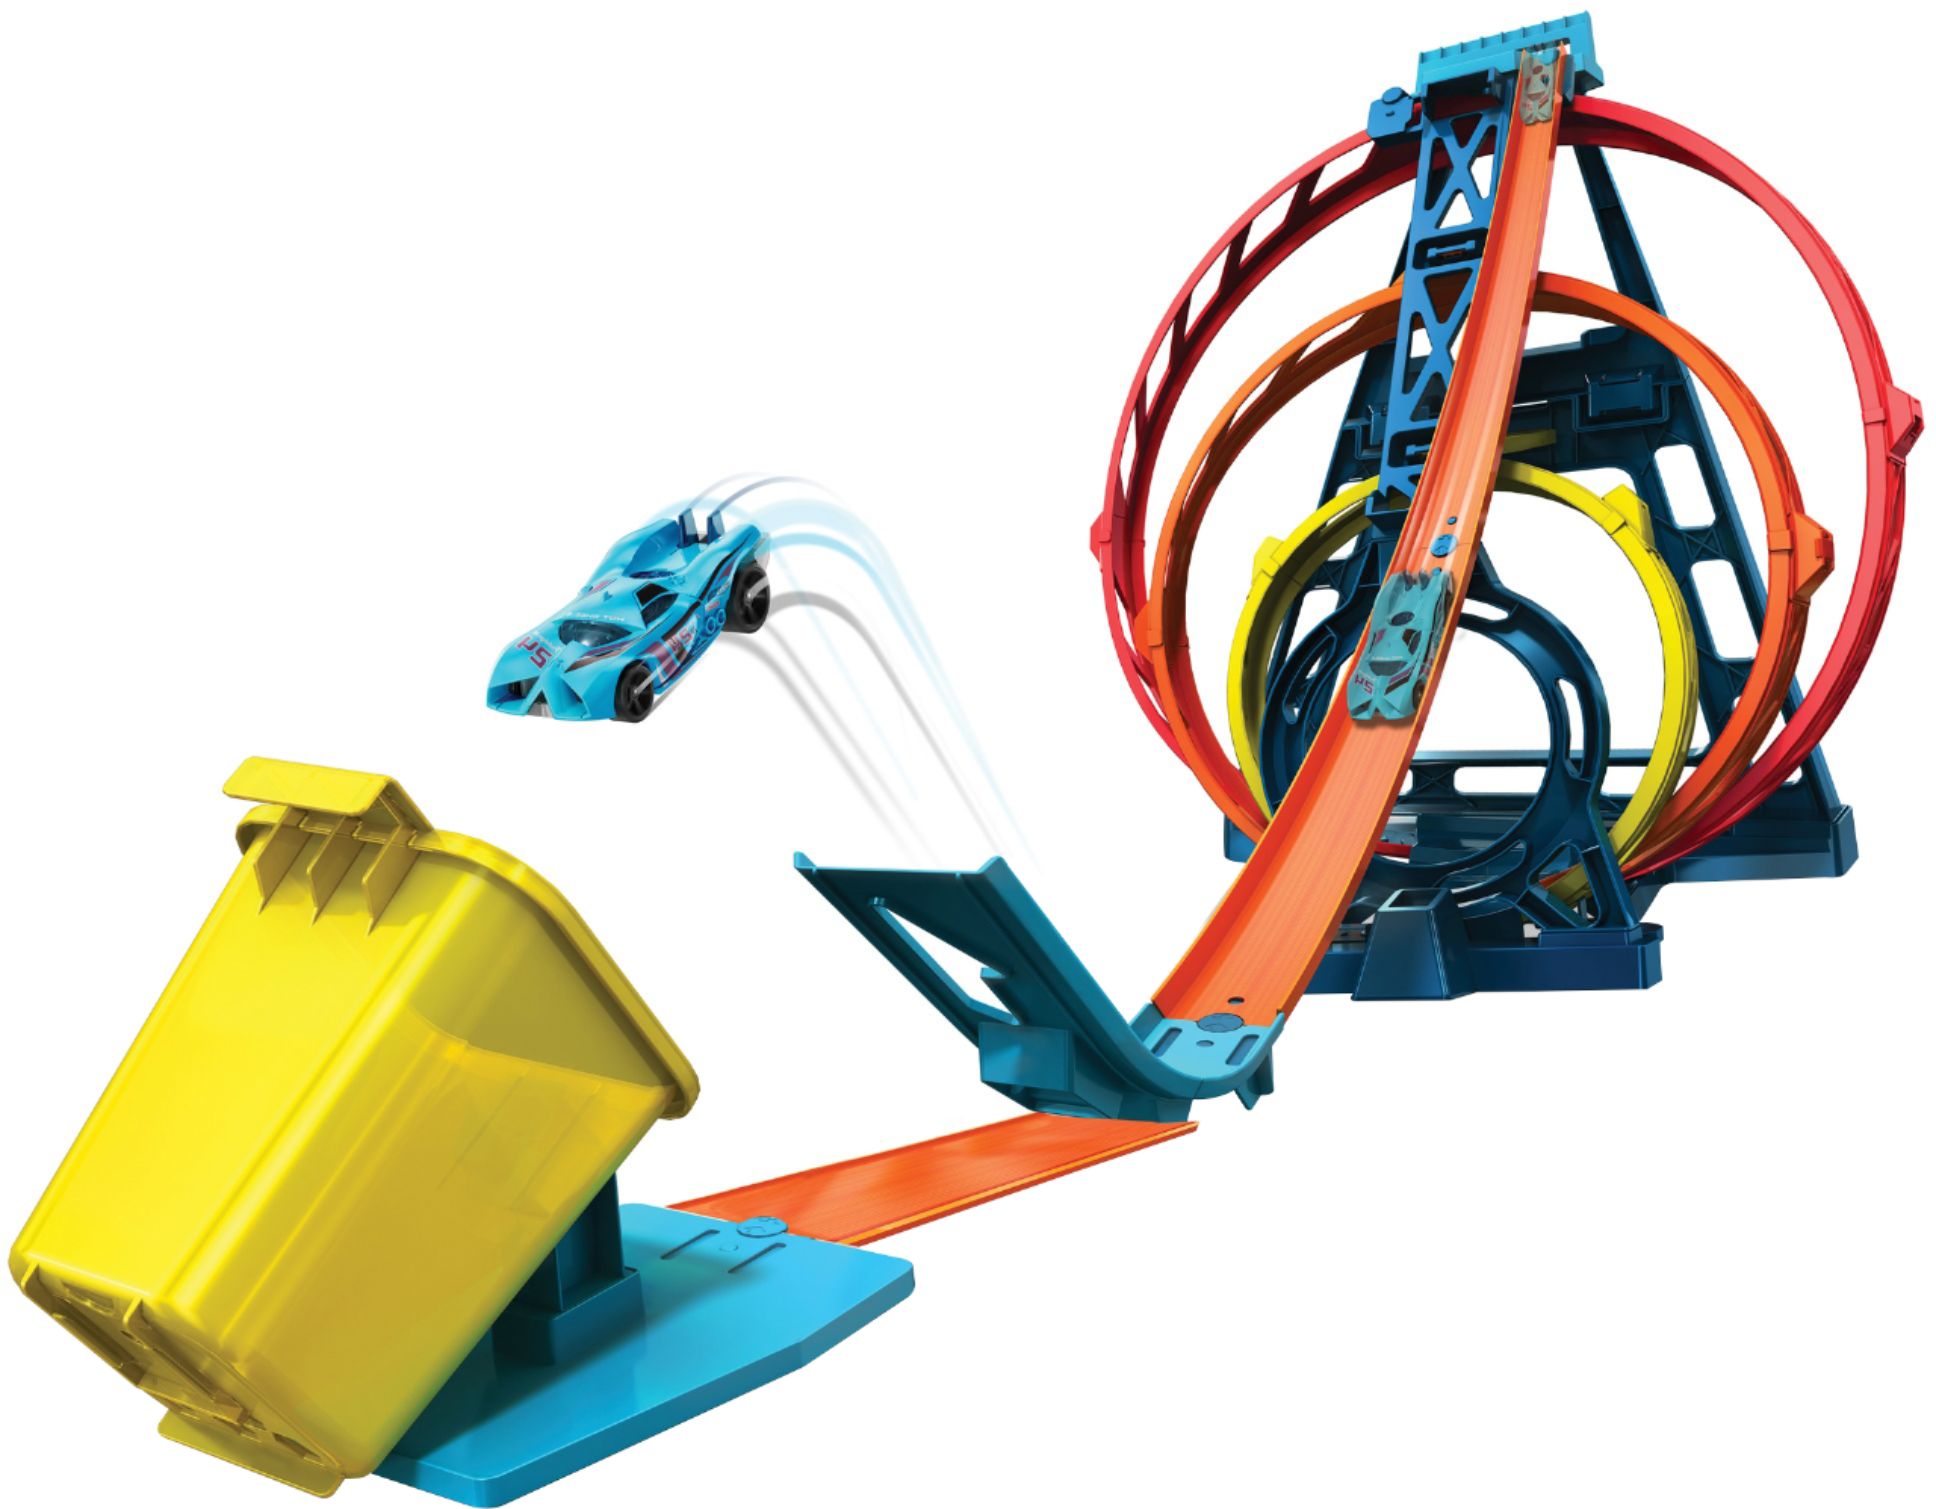 One Loop New 2020 Mattel Hotwheels Loop Builder Set 